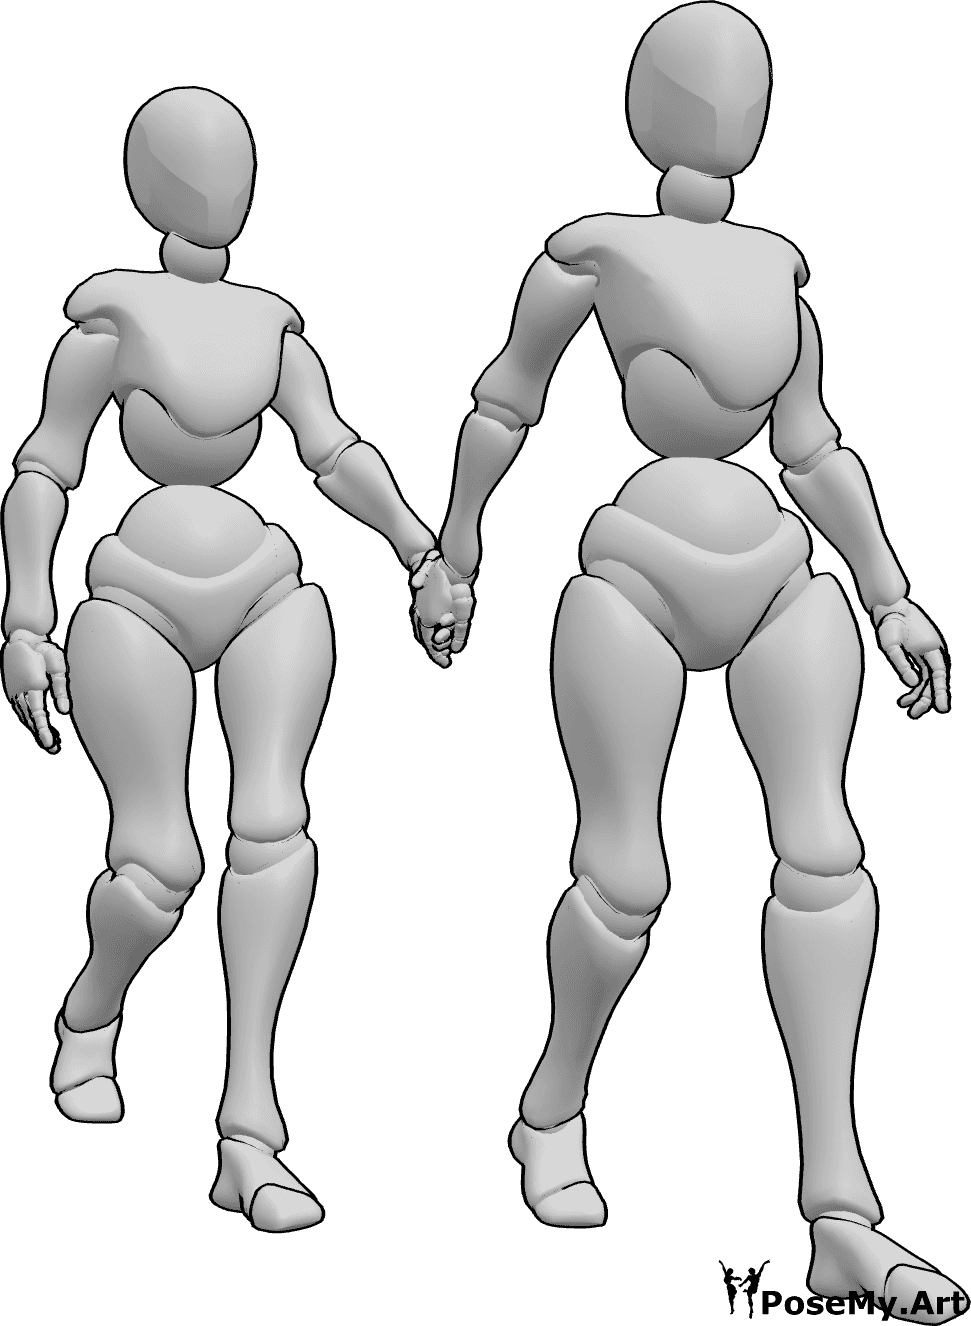 Riferimento alle pose- Due donne che camminano in posa - Due donne camminano mano nella mano, una tiene la mano dell'altra e fa da guida.